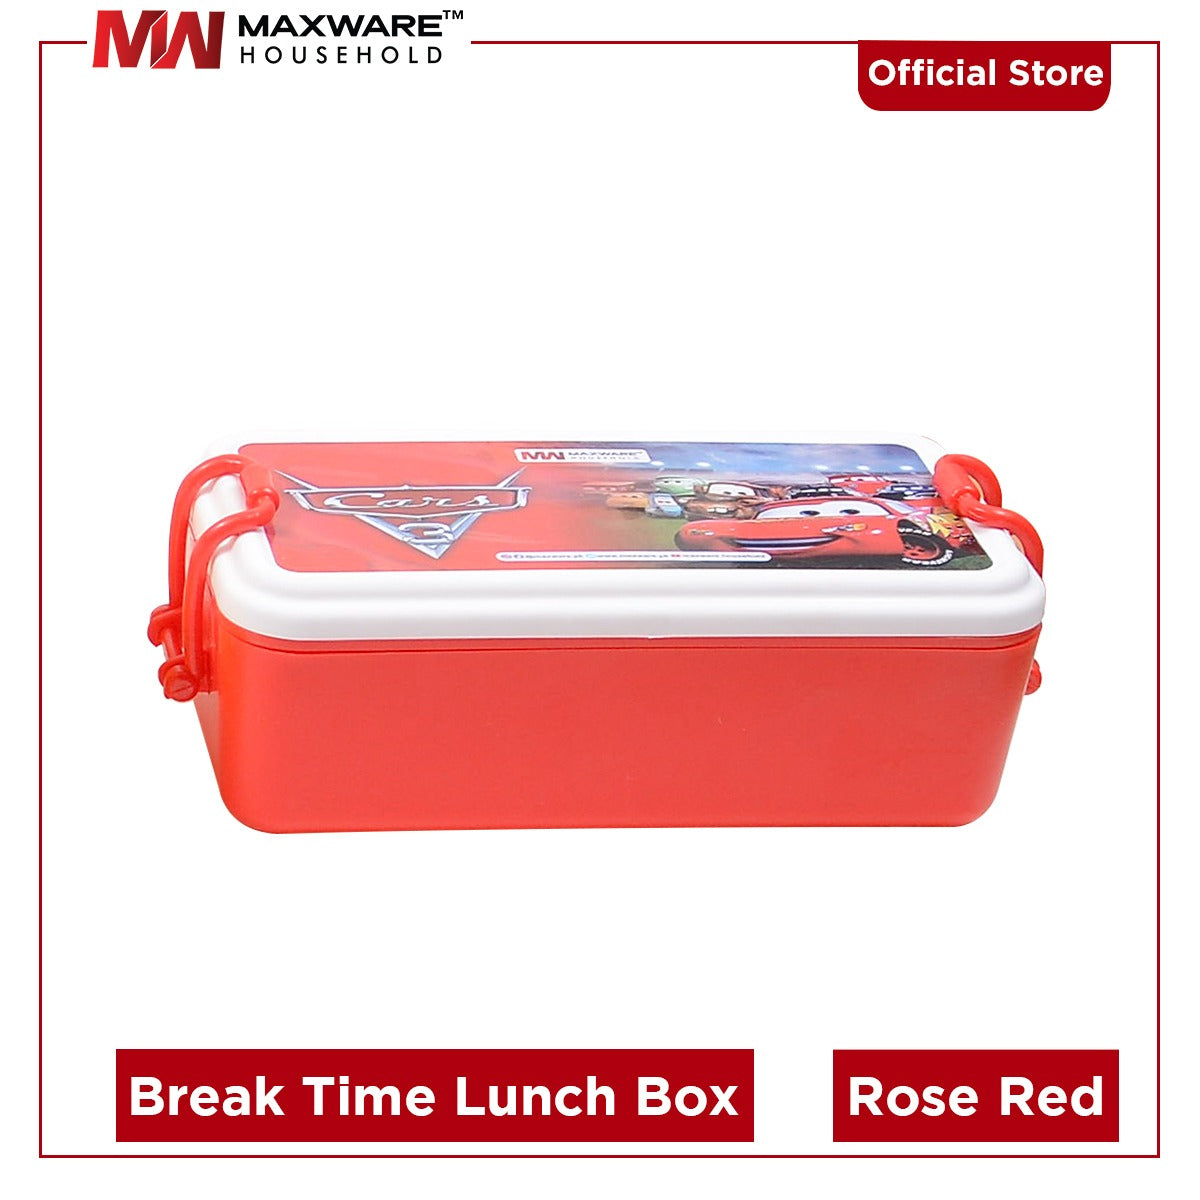 Break time lunch box (700 ml)